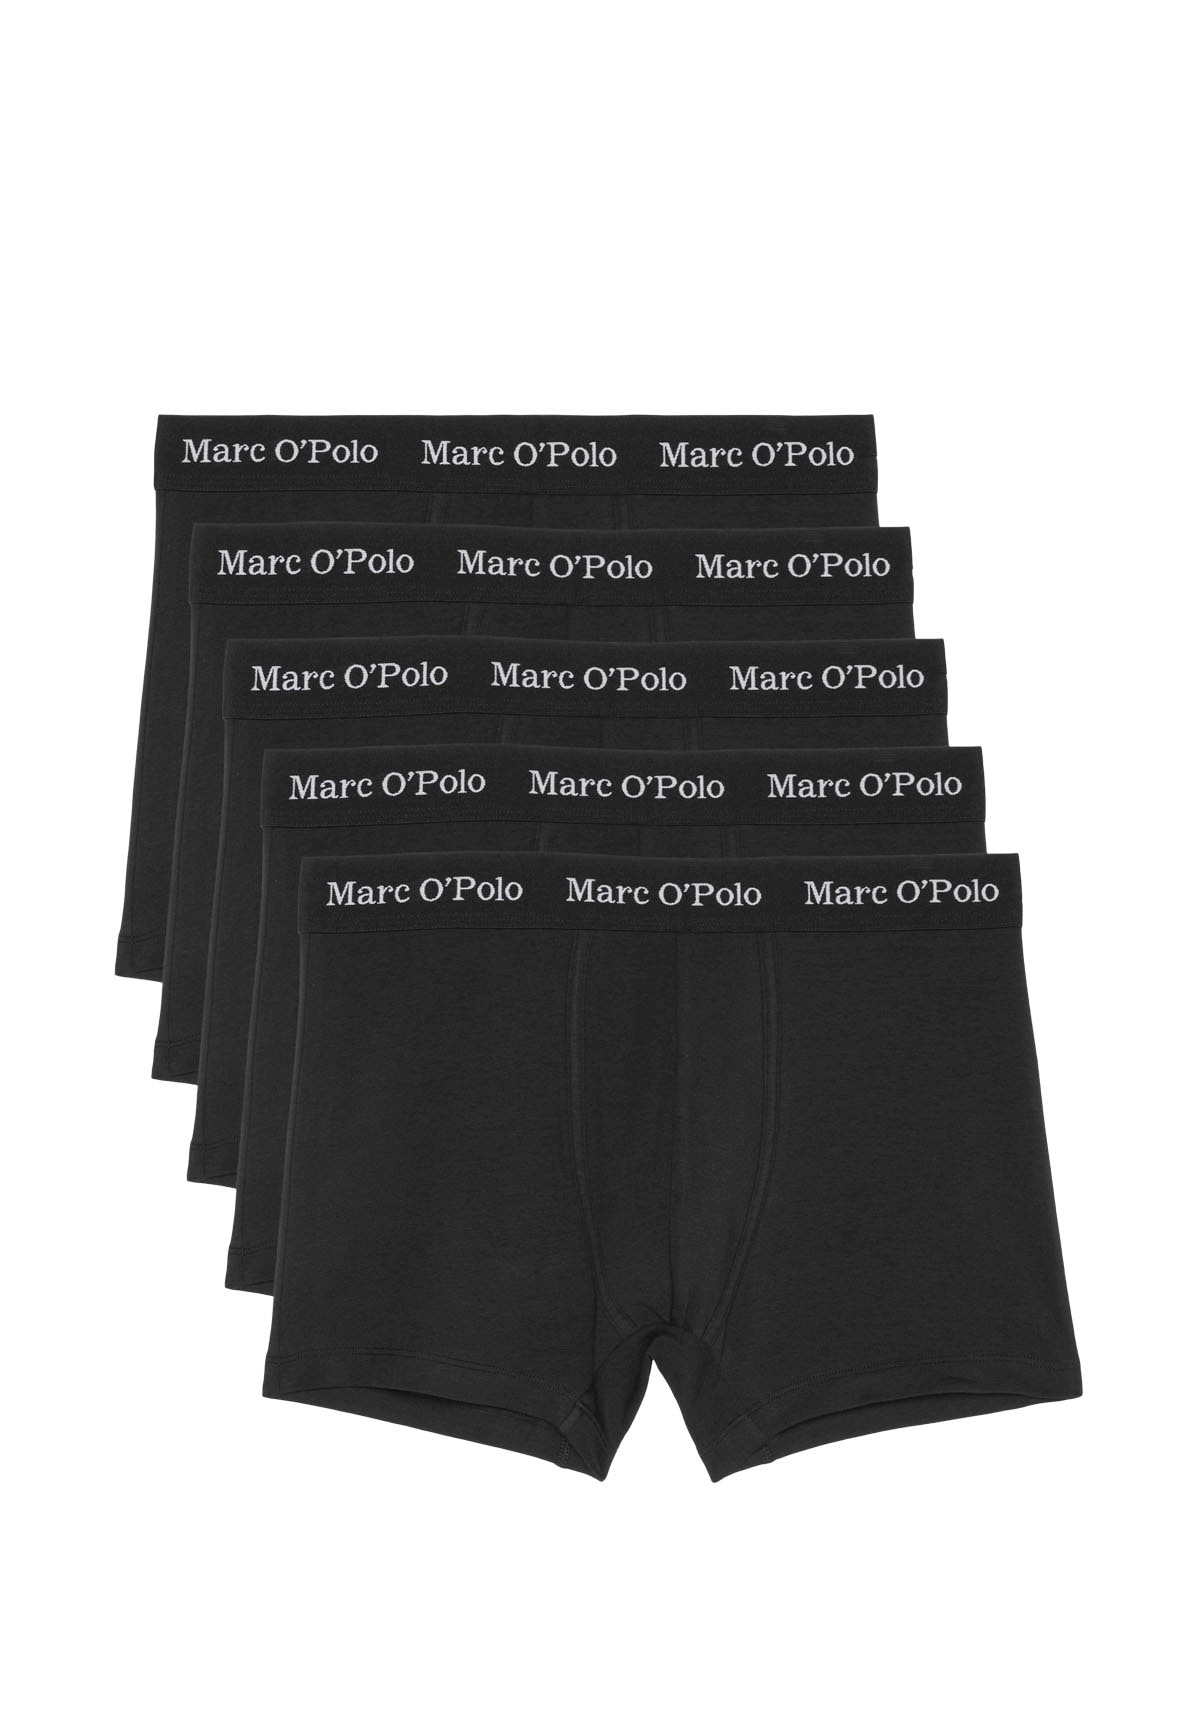 Marc O'Polo Kelnaitės šortukai (Packung 5 St.)